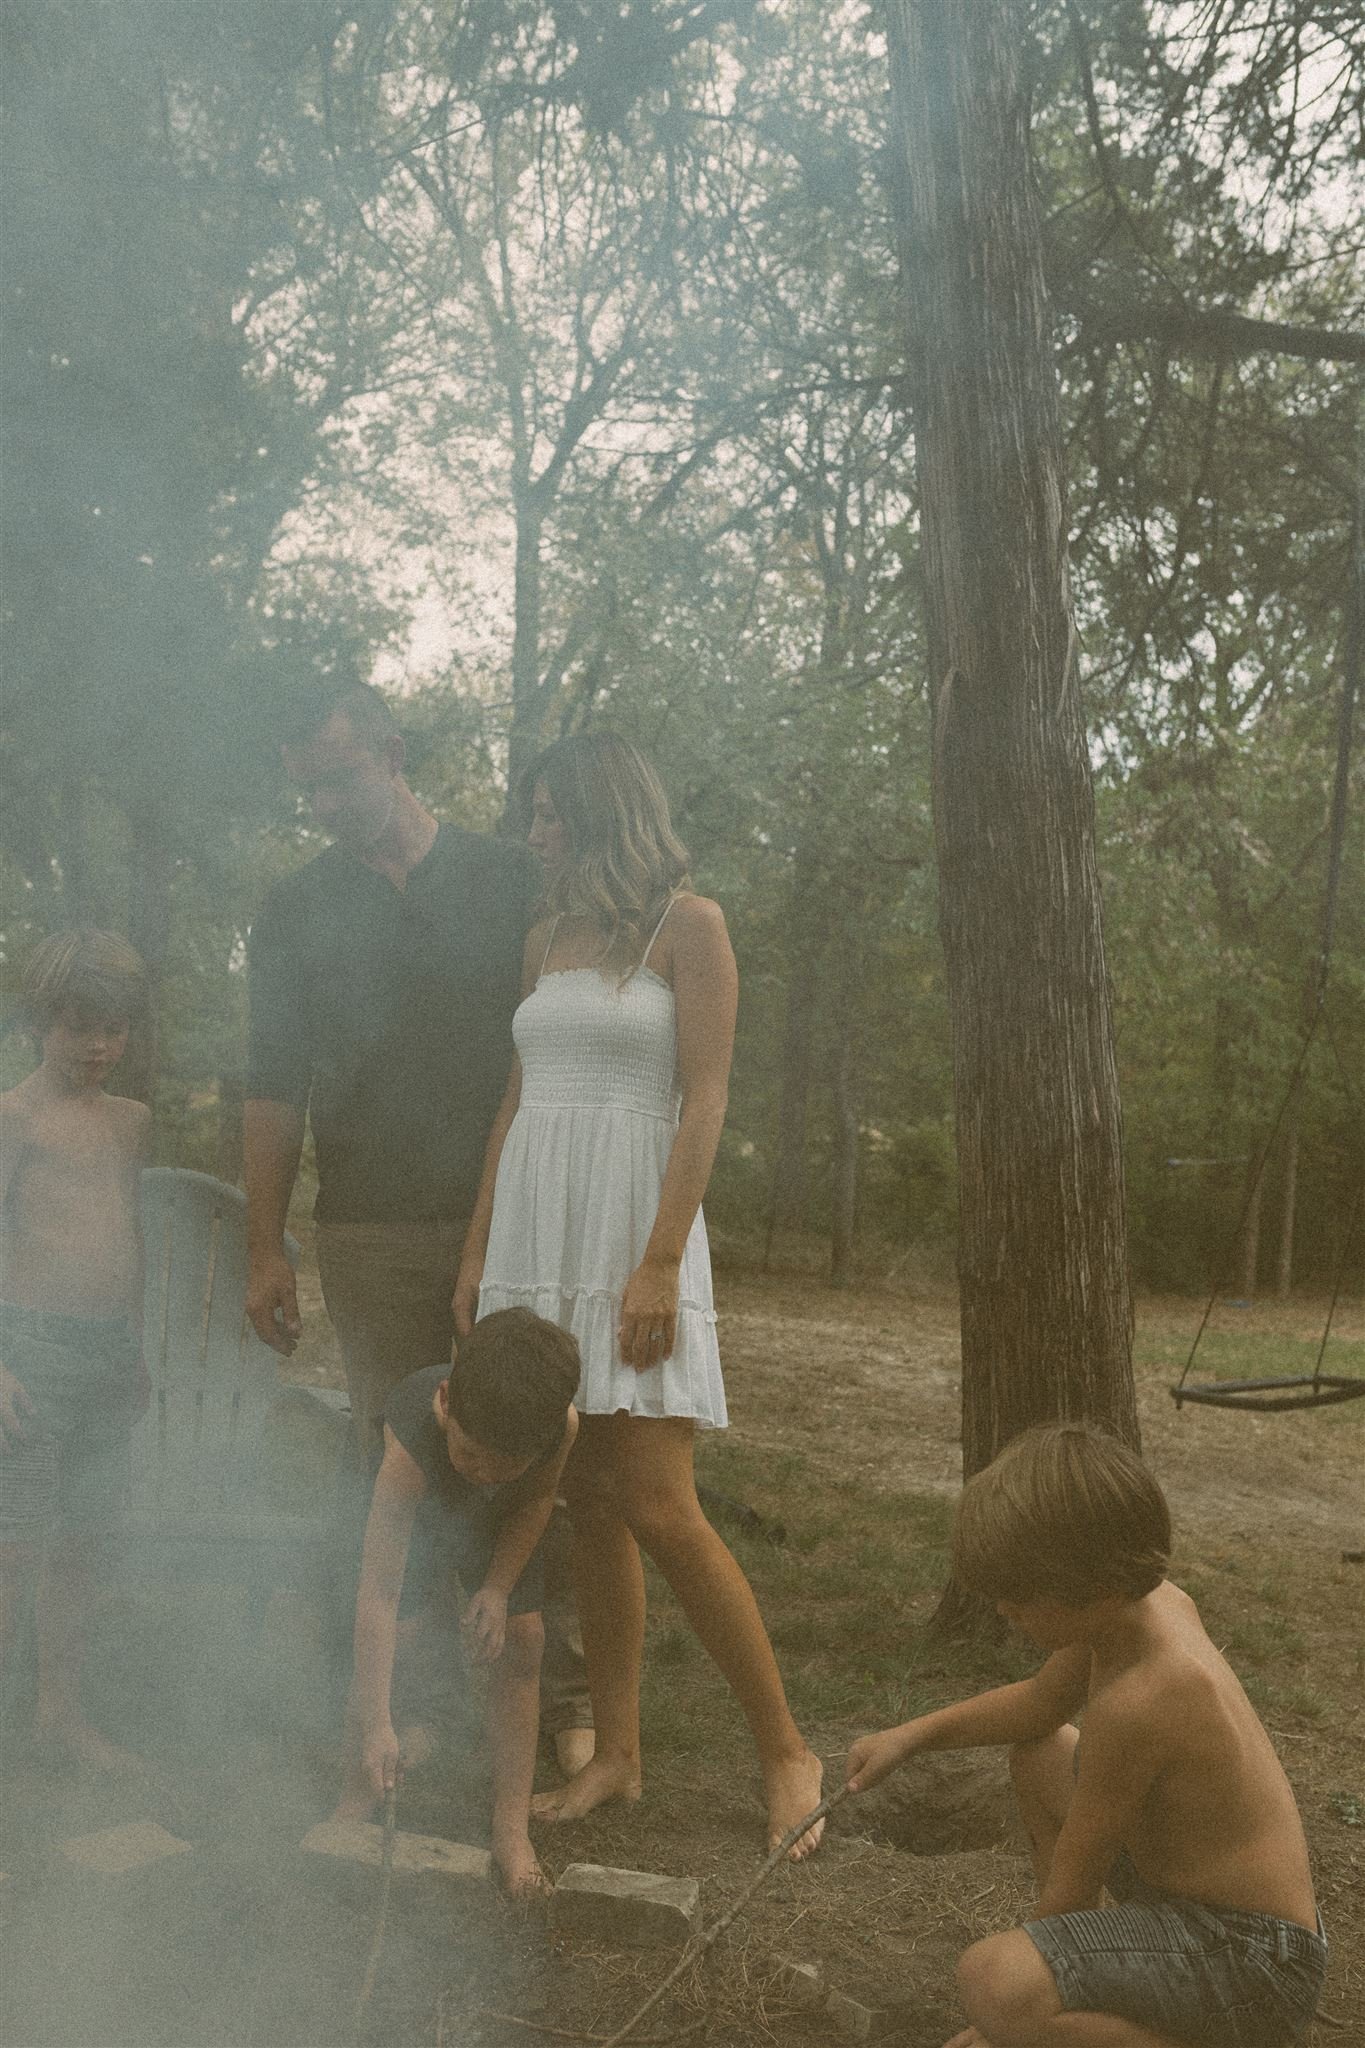  Family outside by a fire in allen, texas 